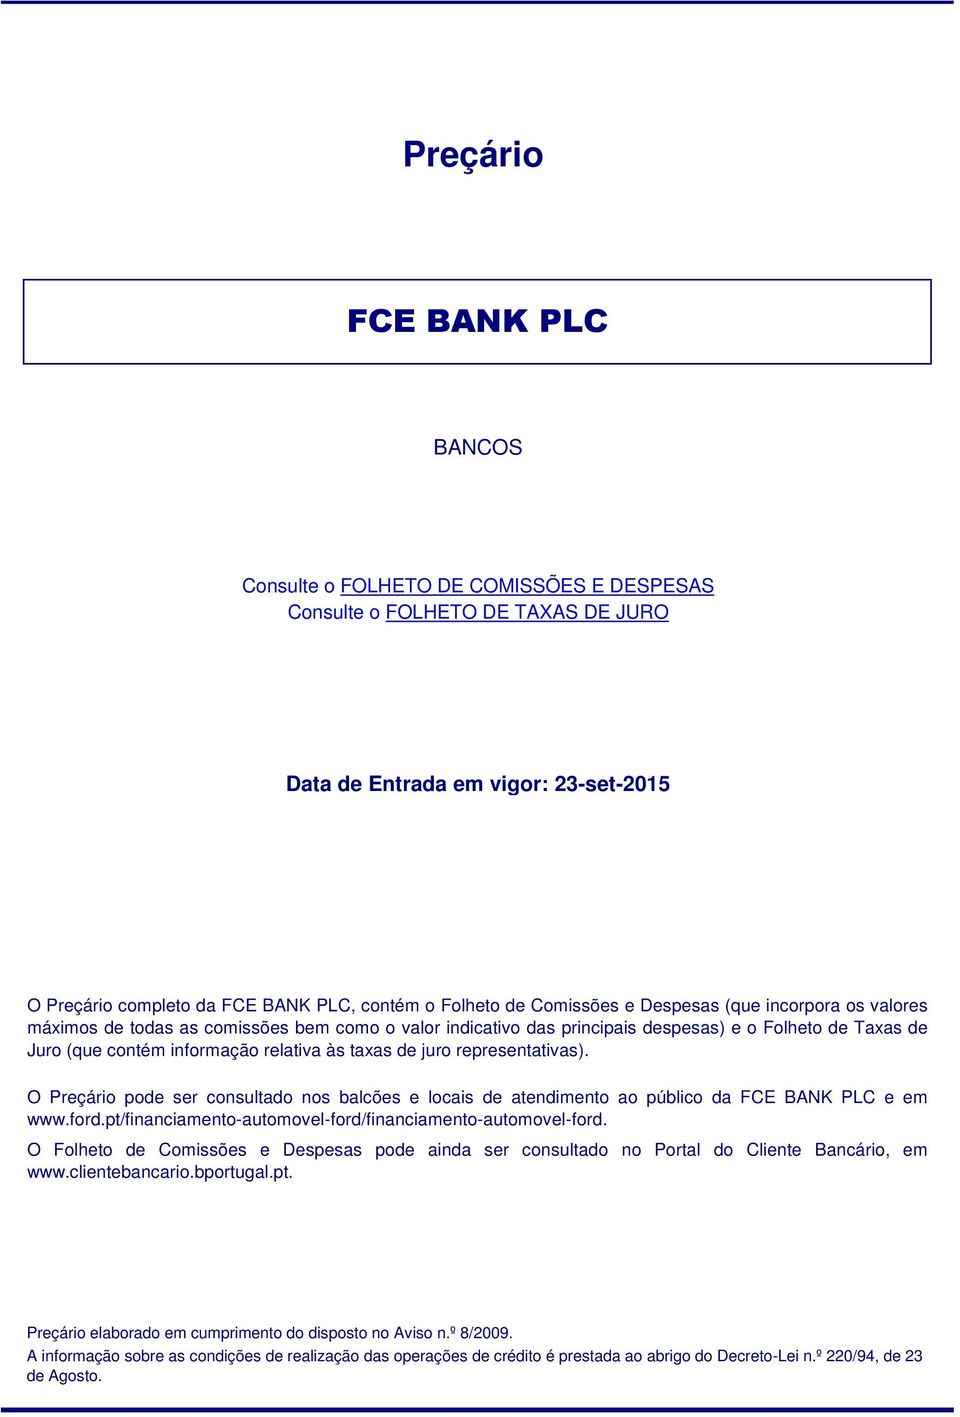 O Preçário pode ser consultado nos balcões e locais de atendimento ao público da FCE BANK PLC e em www.ford.pt/financiamento-automovel-ford/financiamento-automovel-ford.